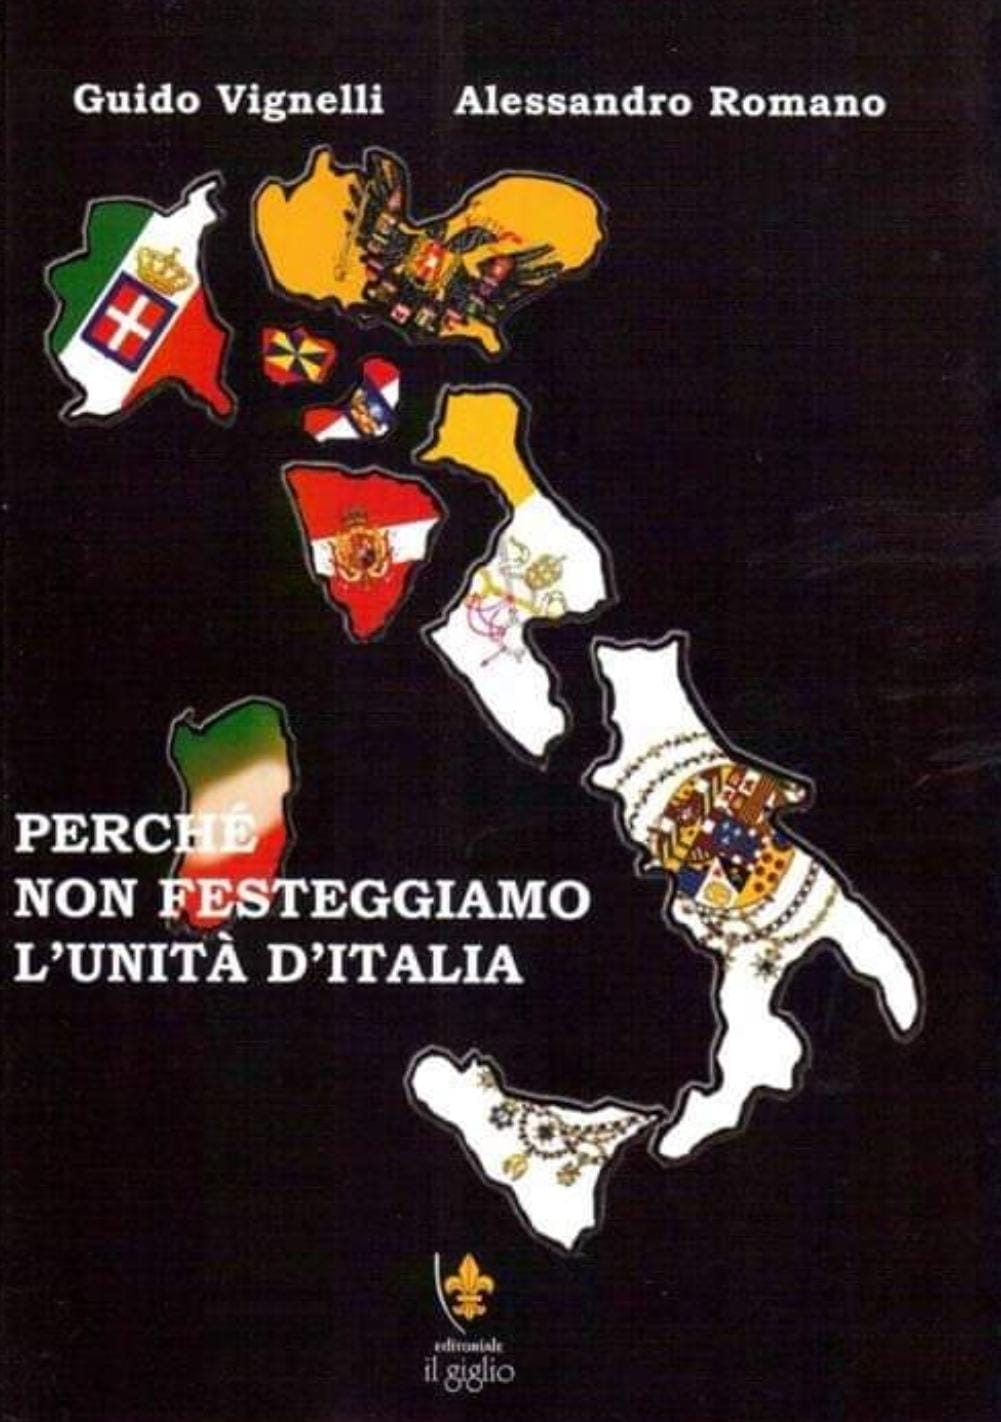 PERCHE' NON FESTEGGIAMO L'UNITA' D'ITALIA LIBRO – Bottega 2 Sicilie